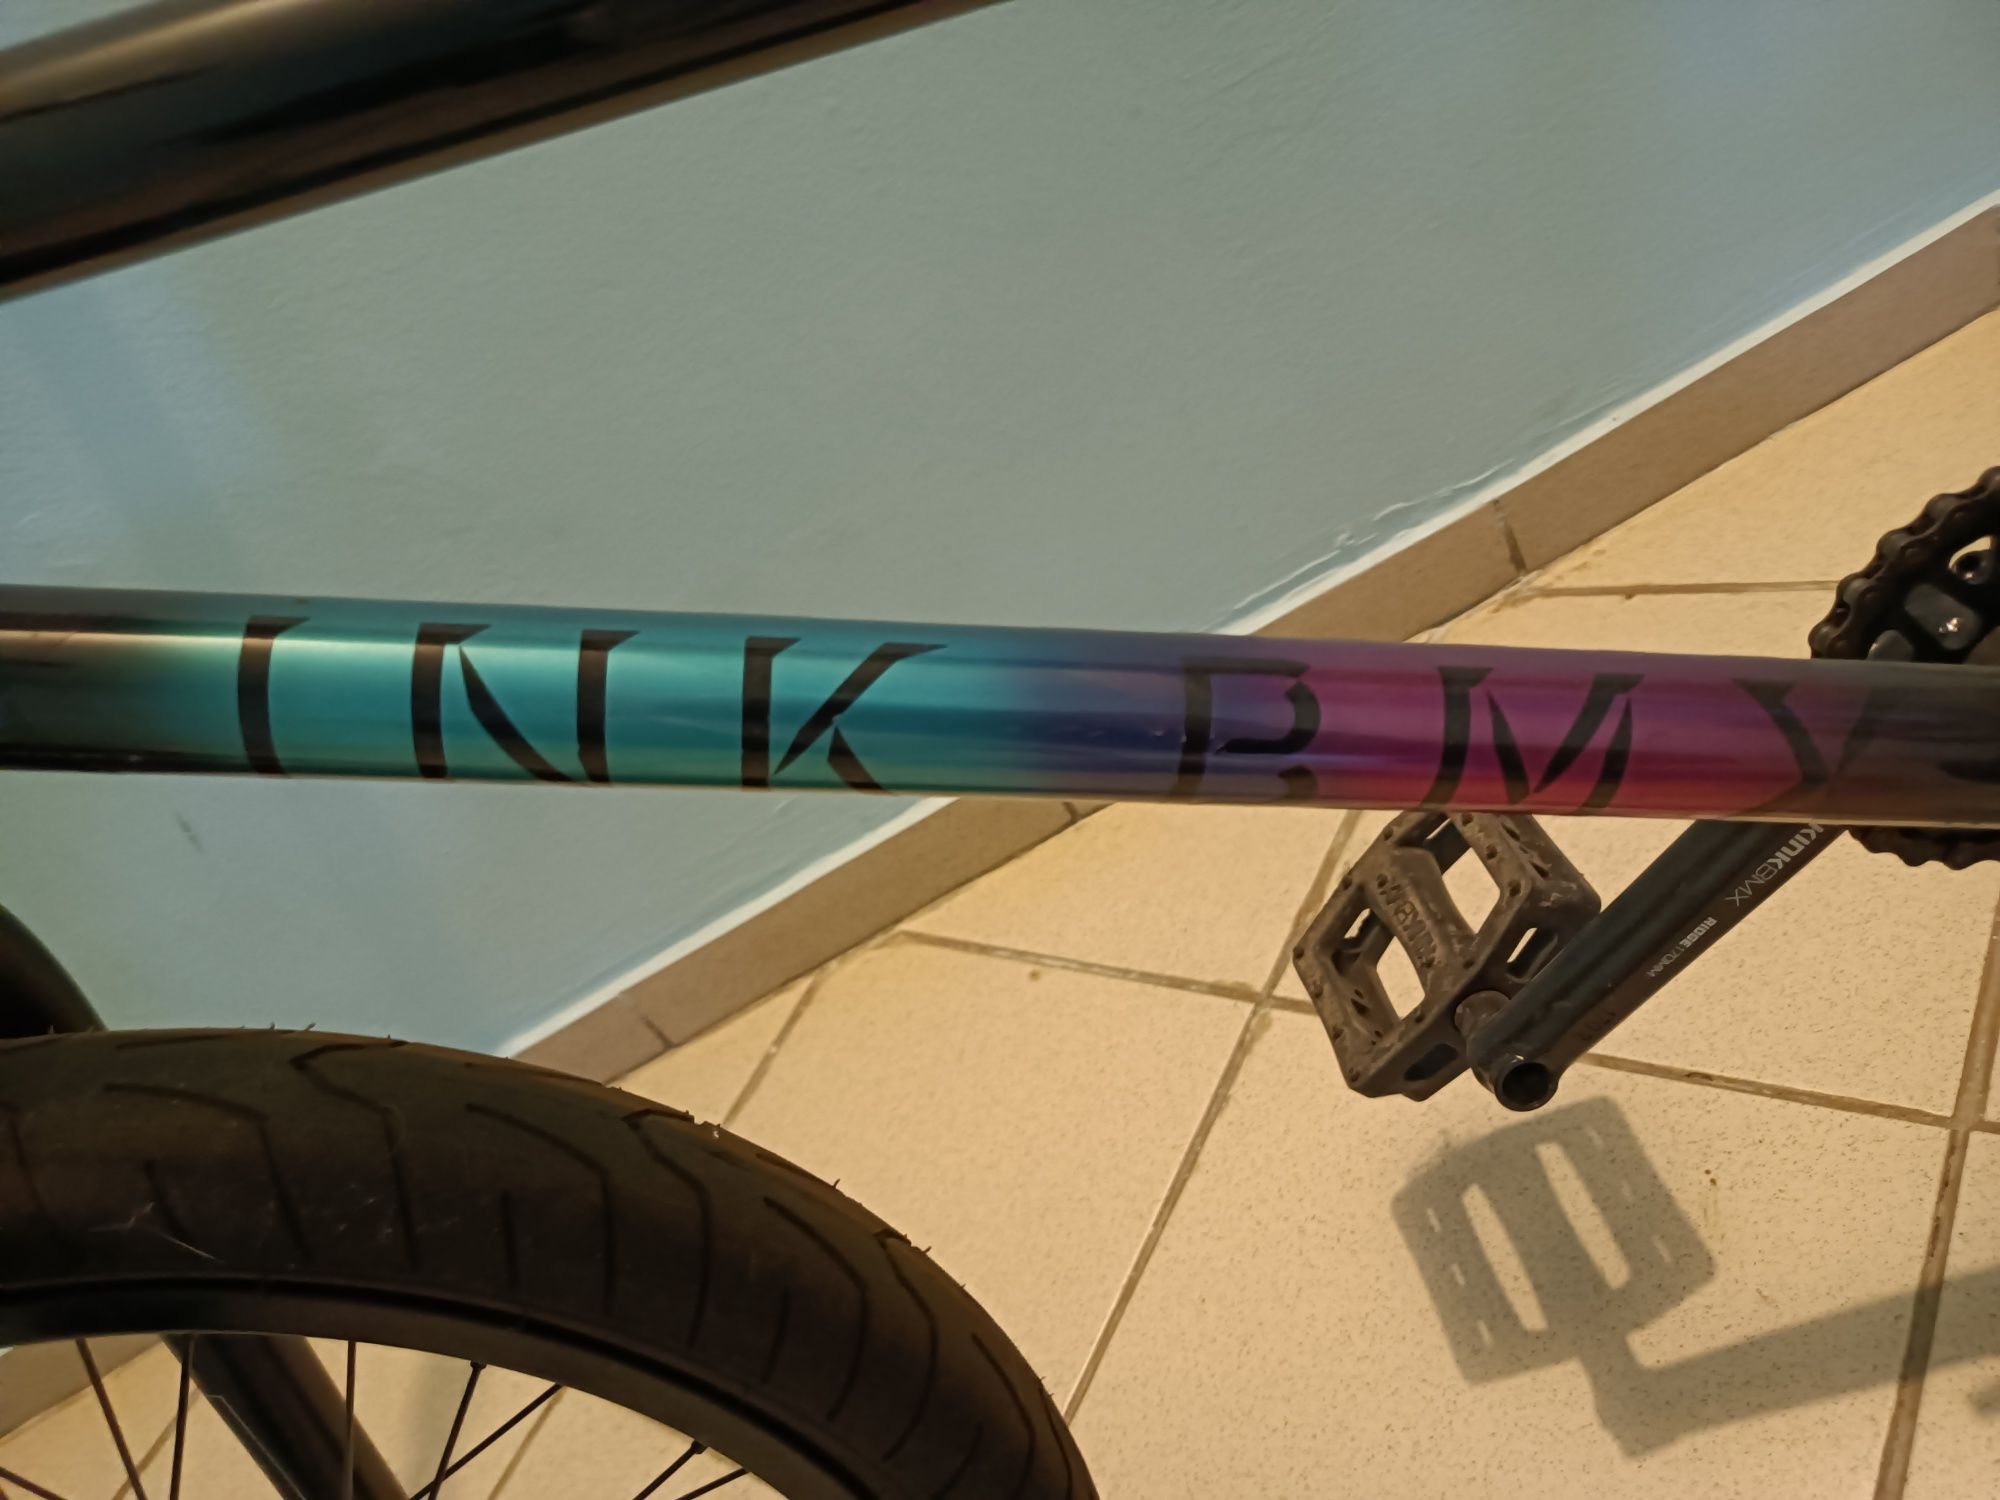 Продам велосипед BMX Kink Whip 20.5 в идеальном состоянии